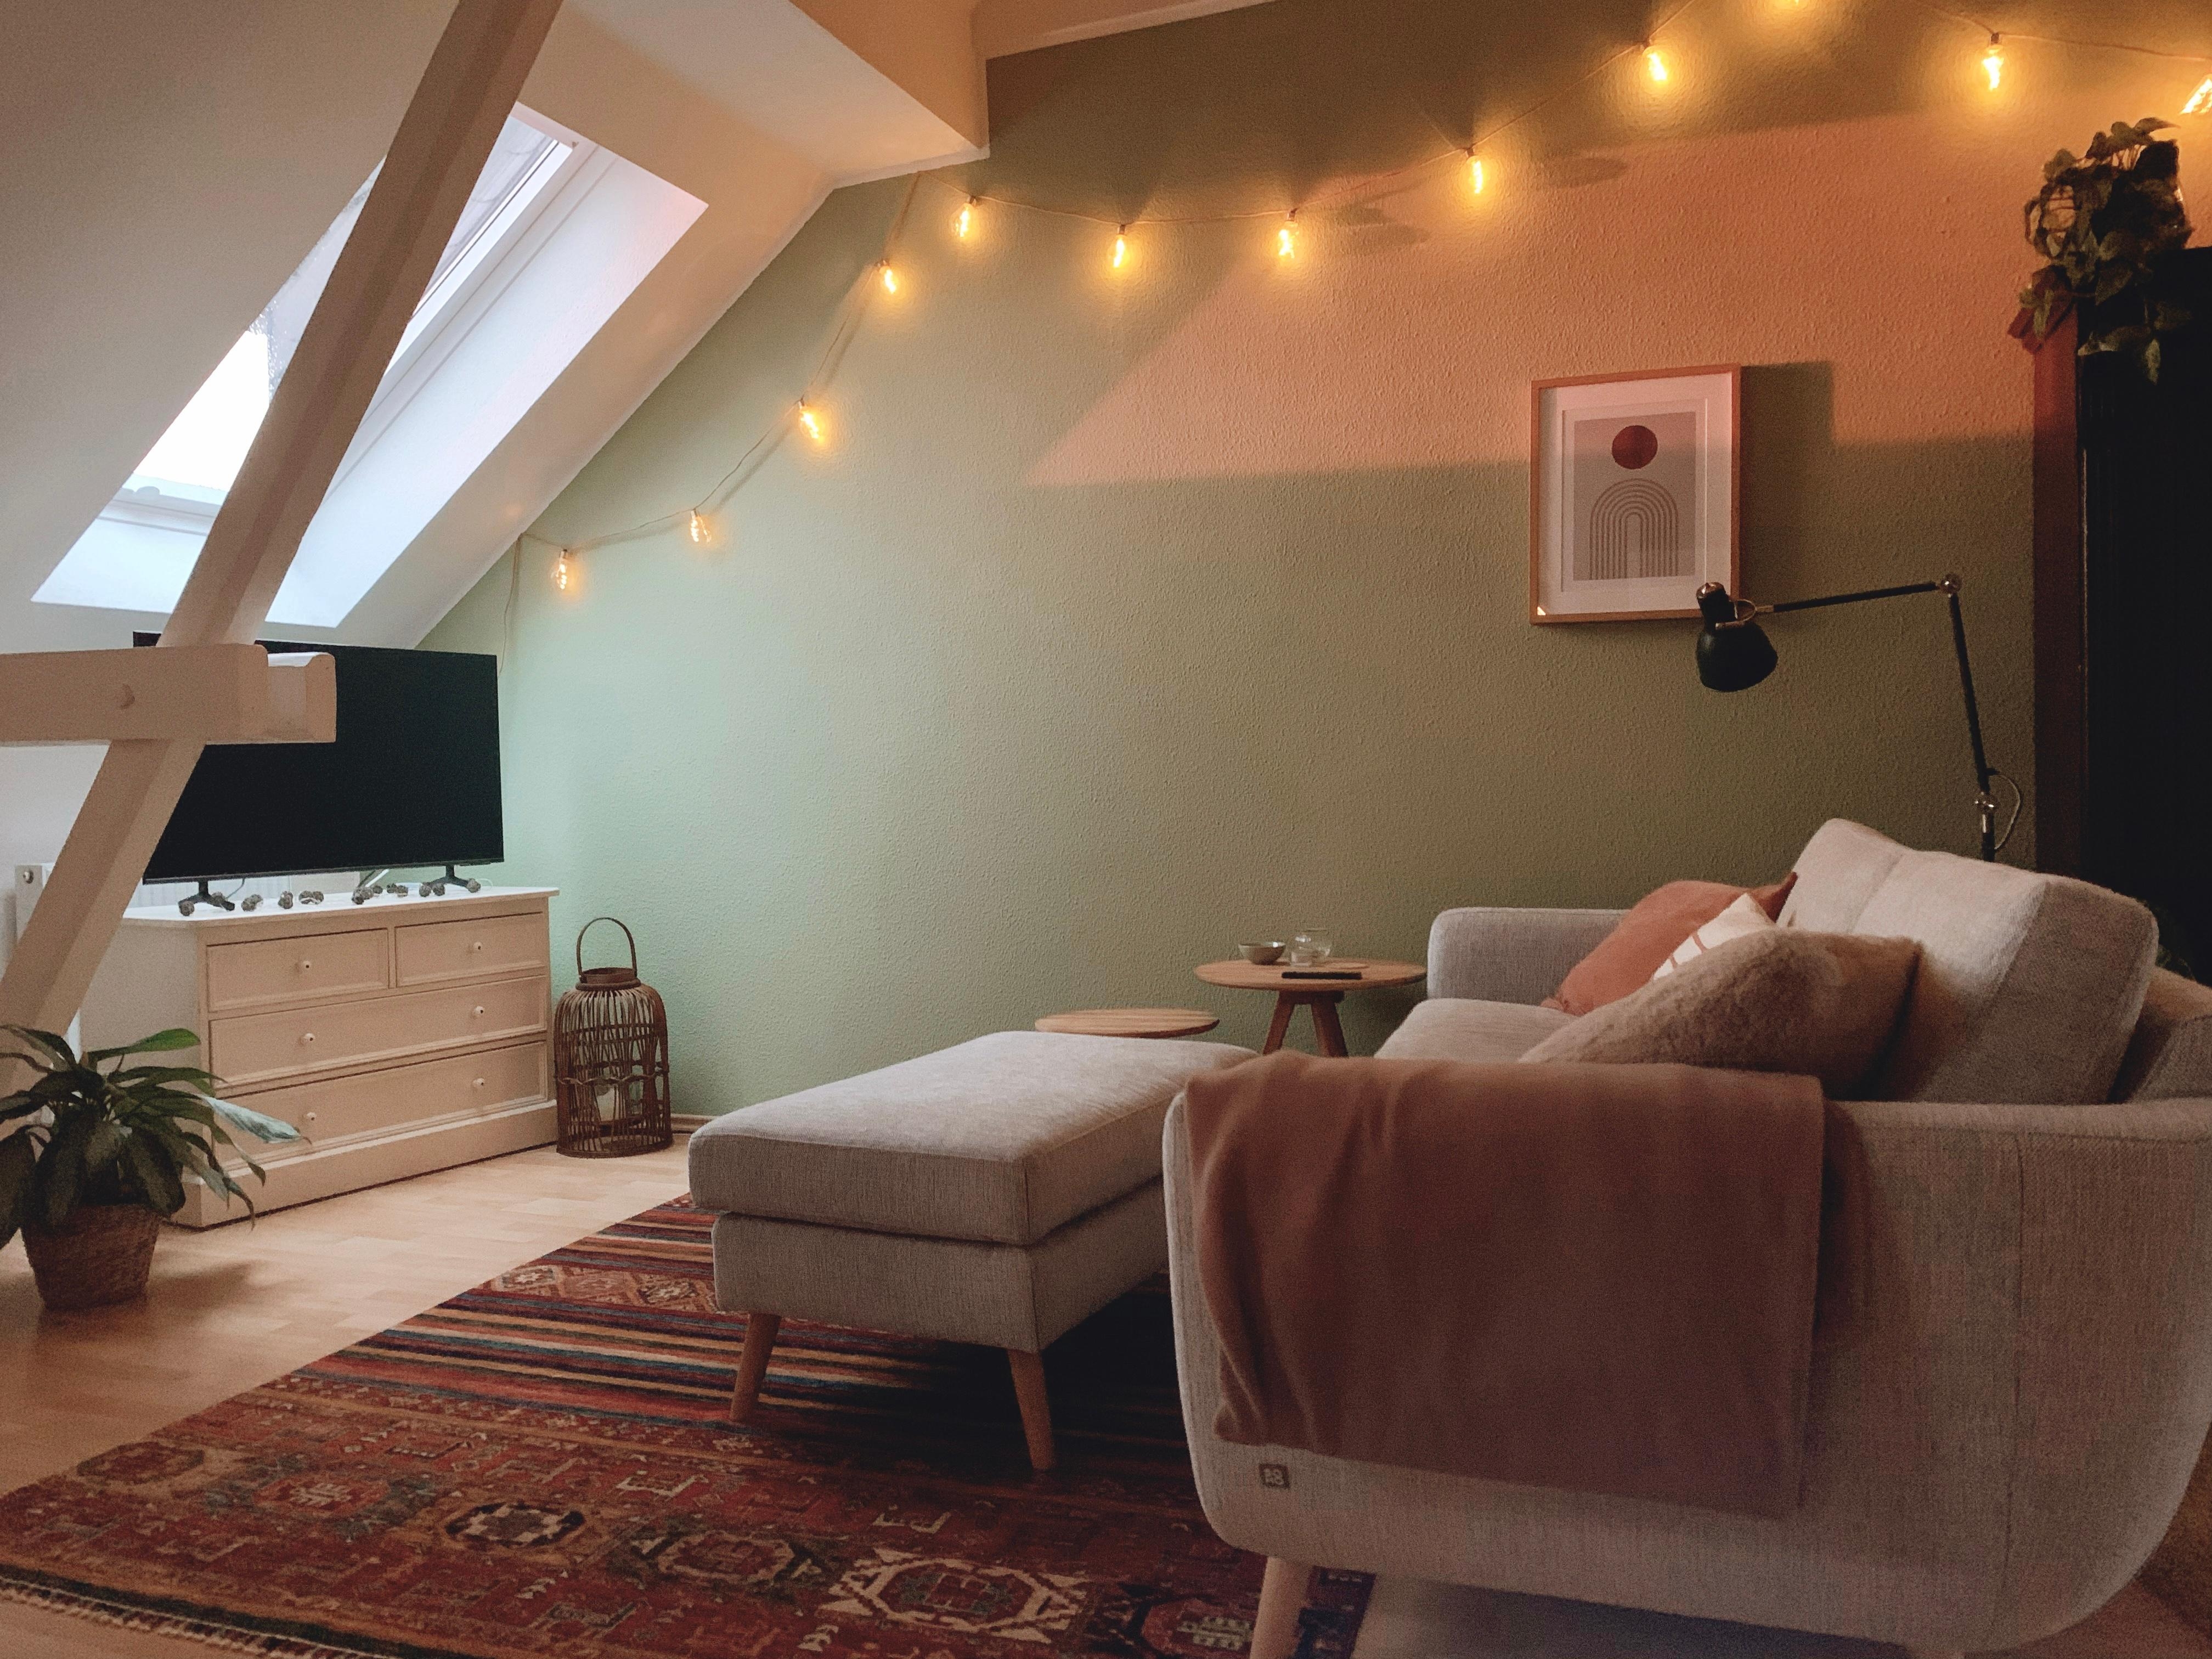 Gemütlicher Couchabend:)

#couch #sofa #lichterkette #teppich #Pflanzen #kissen #gemütlich